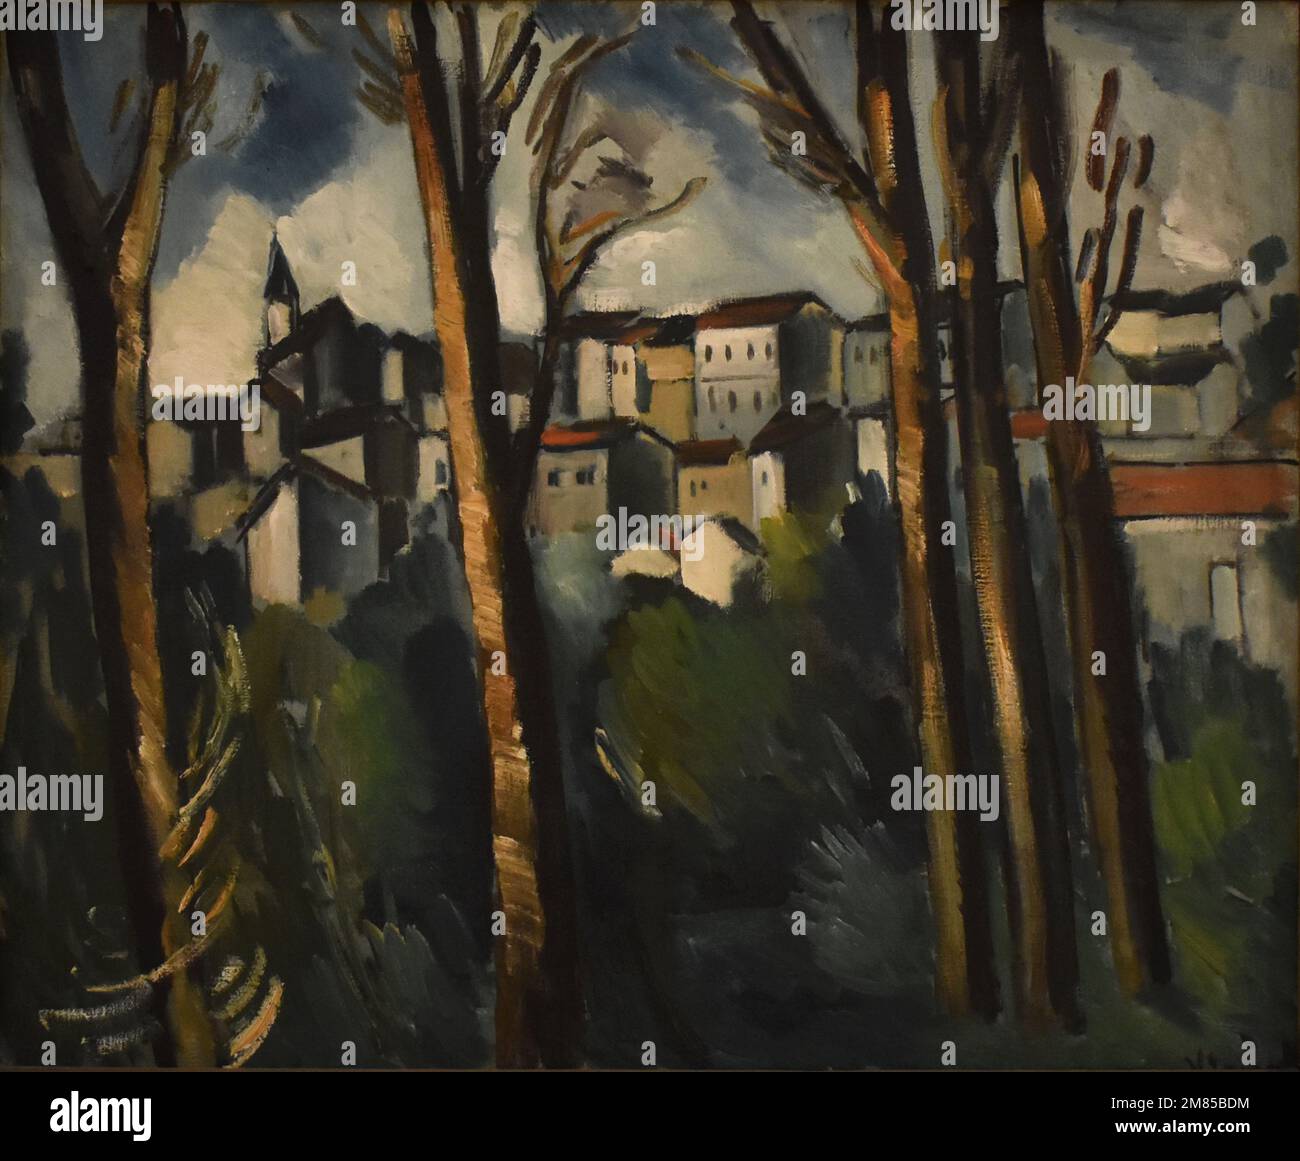 Maurice Vlaminck (1876-1958). Villaggio visto attraverso alberi. 1914. Statens Museum for Kunst. Kopenhagen, Dänemark. Foto Stock